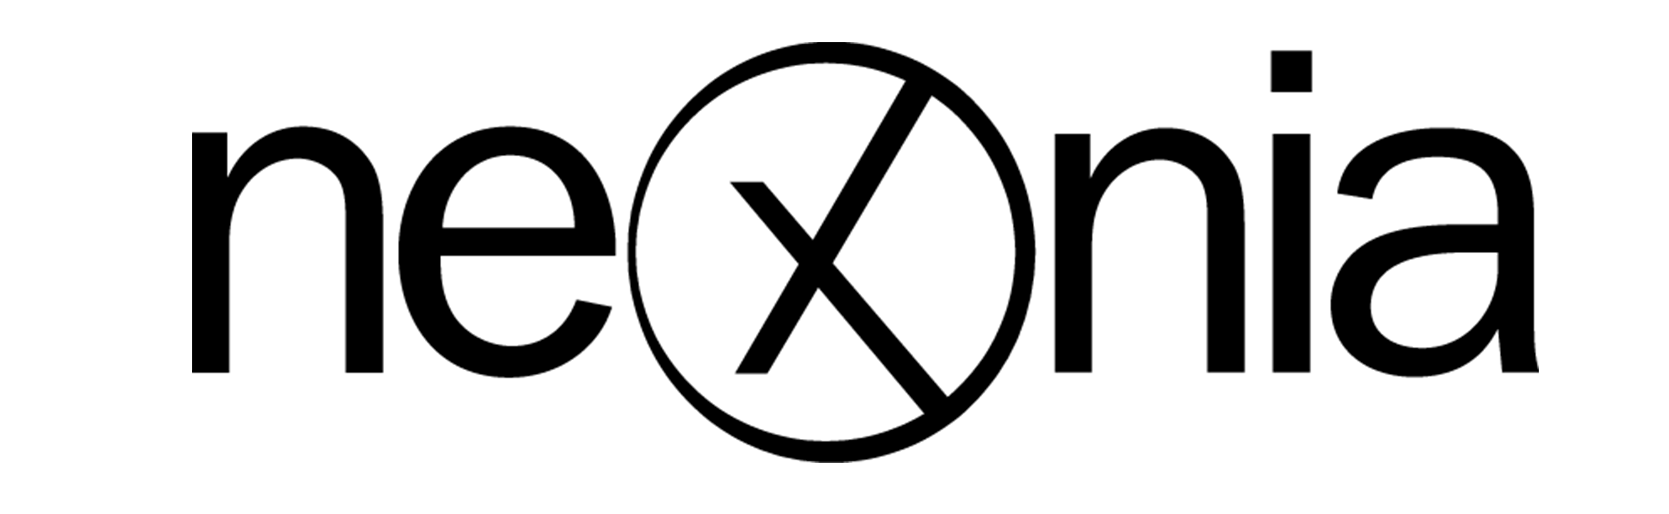 nexnia logo